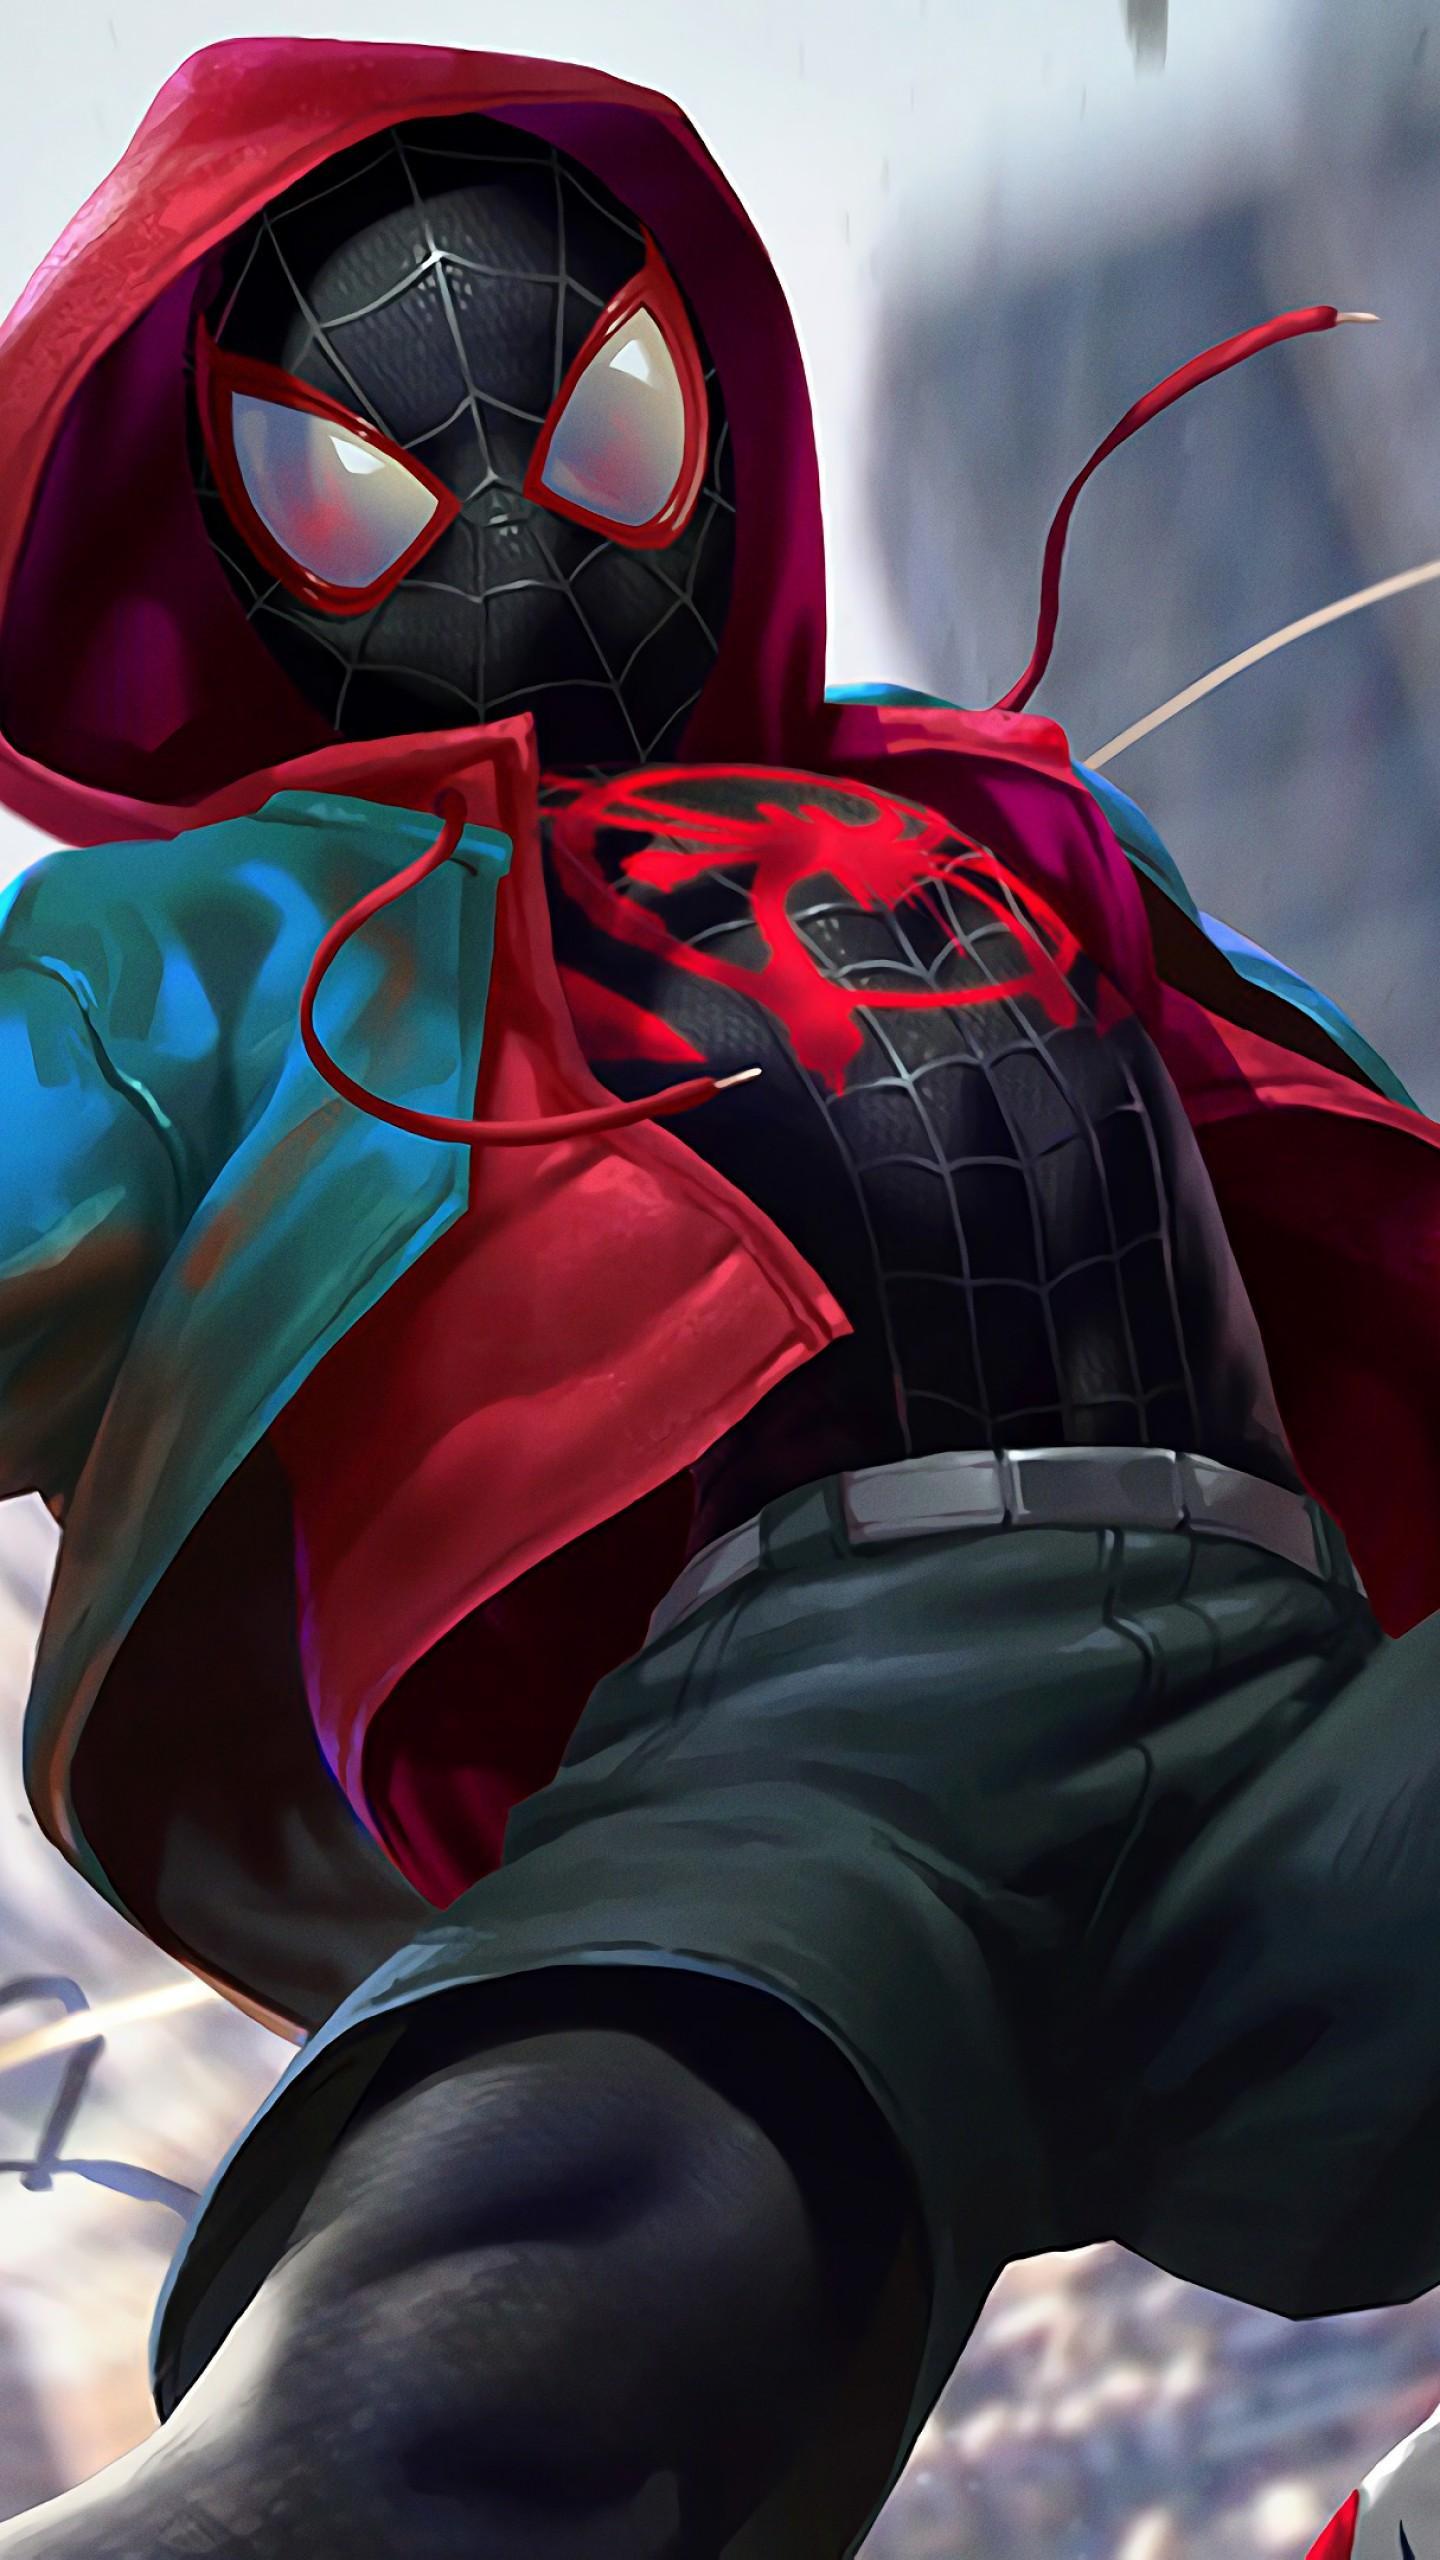 40+] Amazing Spiderman Wallpapers for Desktop - WallpaperSafari